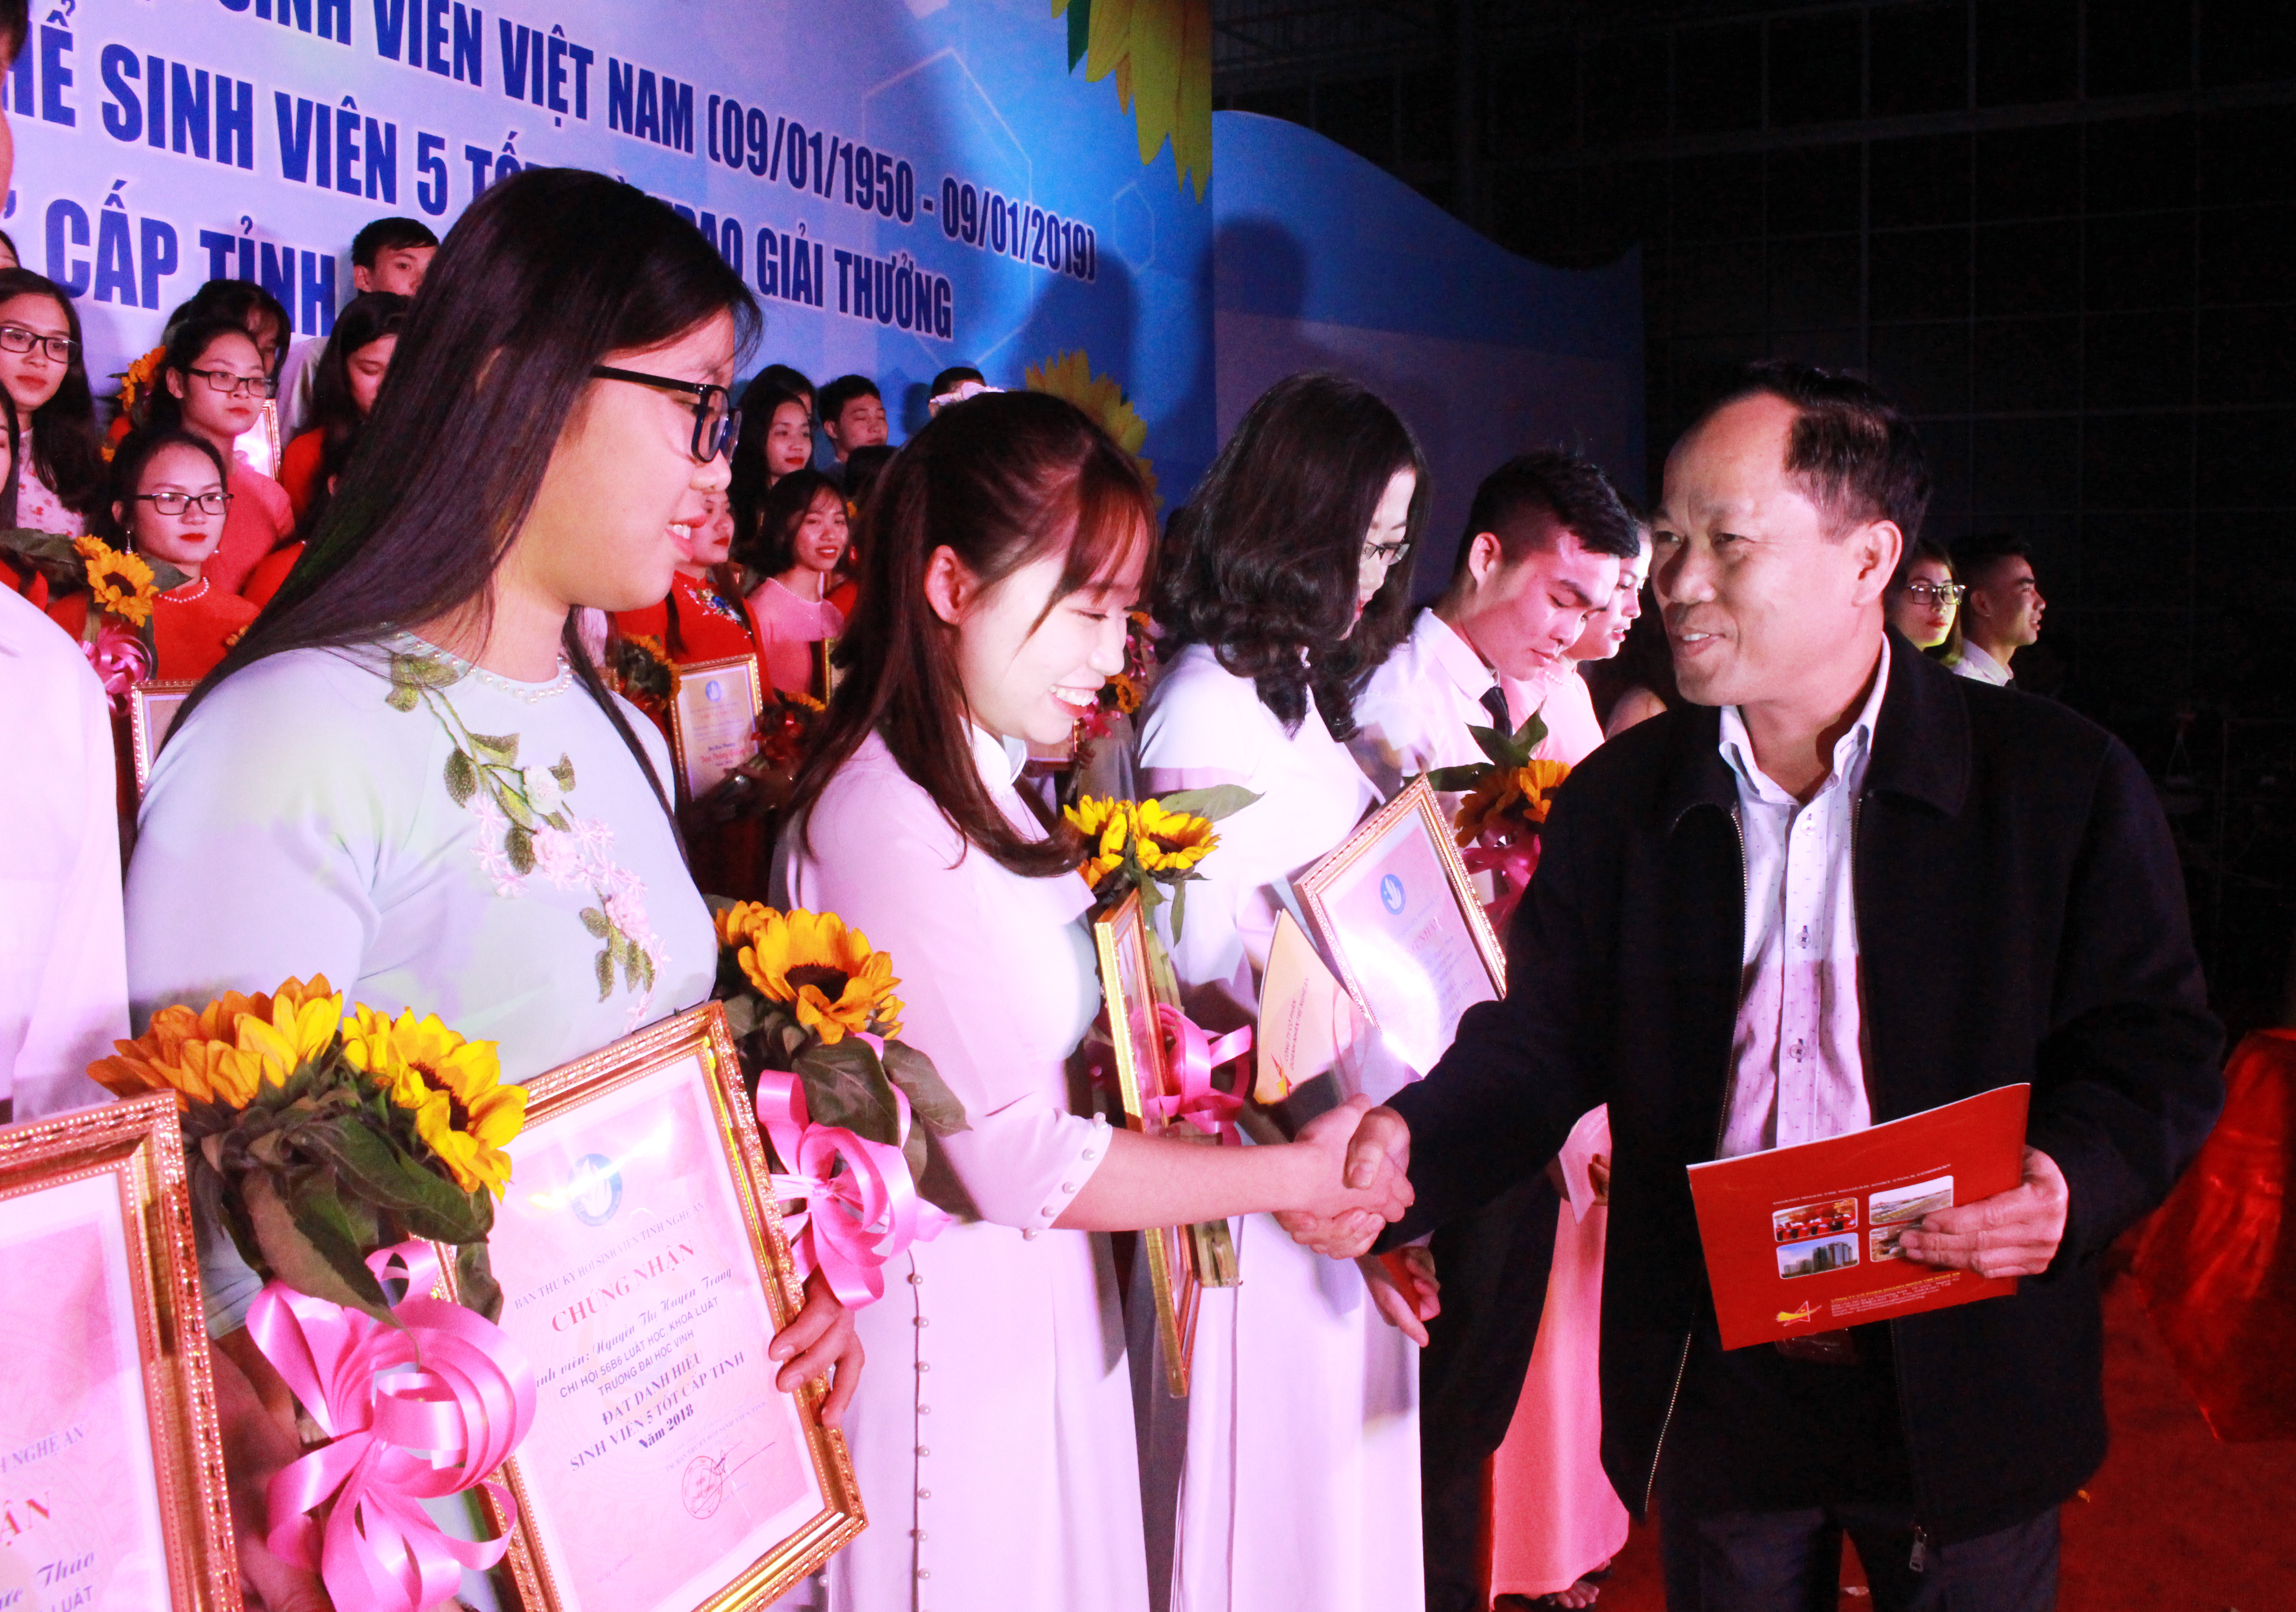 Dịp này, Hiệp hội Doanh nghiệp tỉnh Nghệ An quyết định tiếp nhận, hỗ trợ và trao quà cho 12 sinh viên 5 tốt tỉnh Nghệ An năm 2019. Ảnh: Phương Thúy